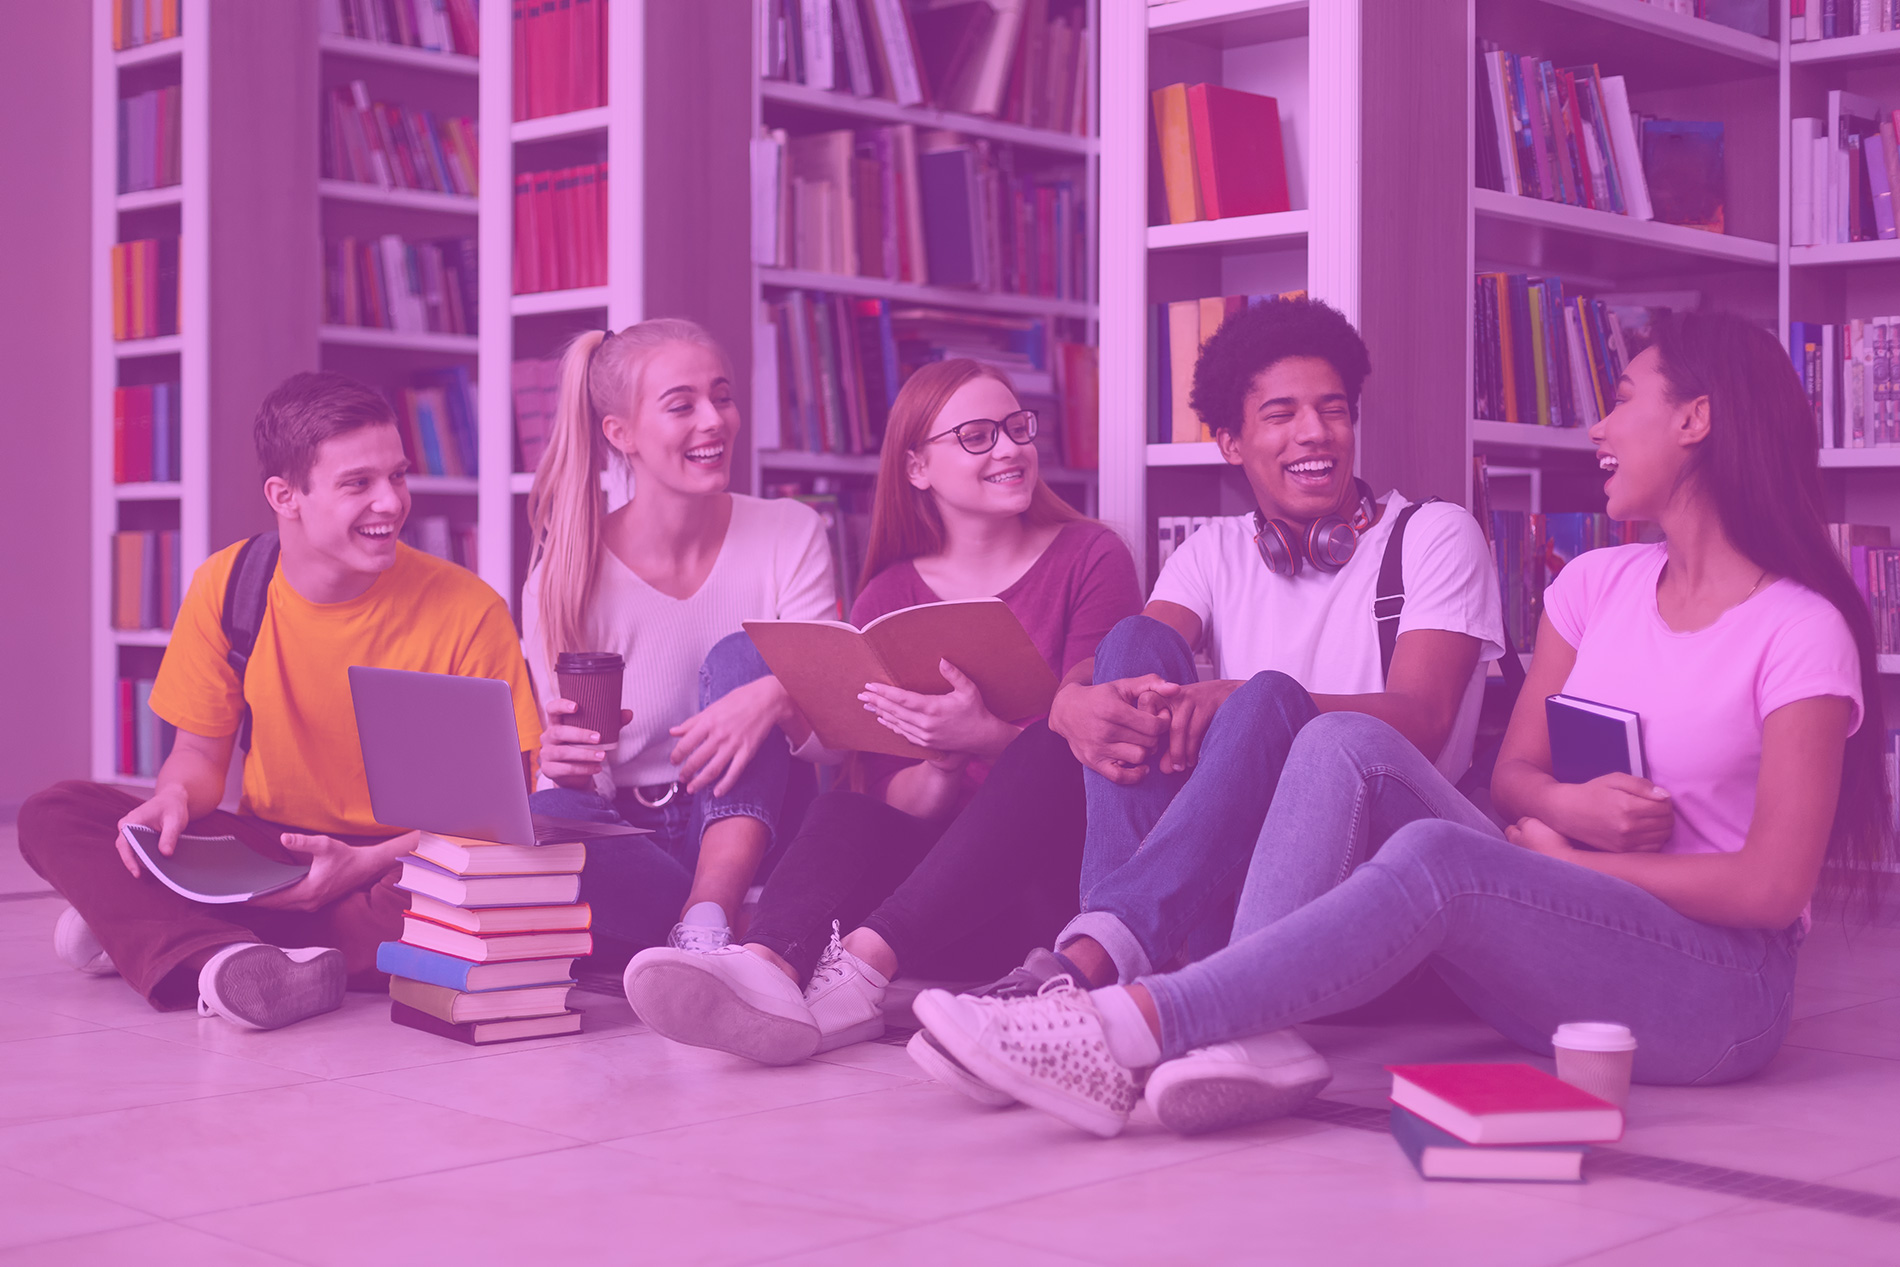 Eine Gruppe junger Menschen sitzt lachend vor Bücherregalen.